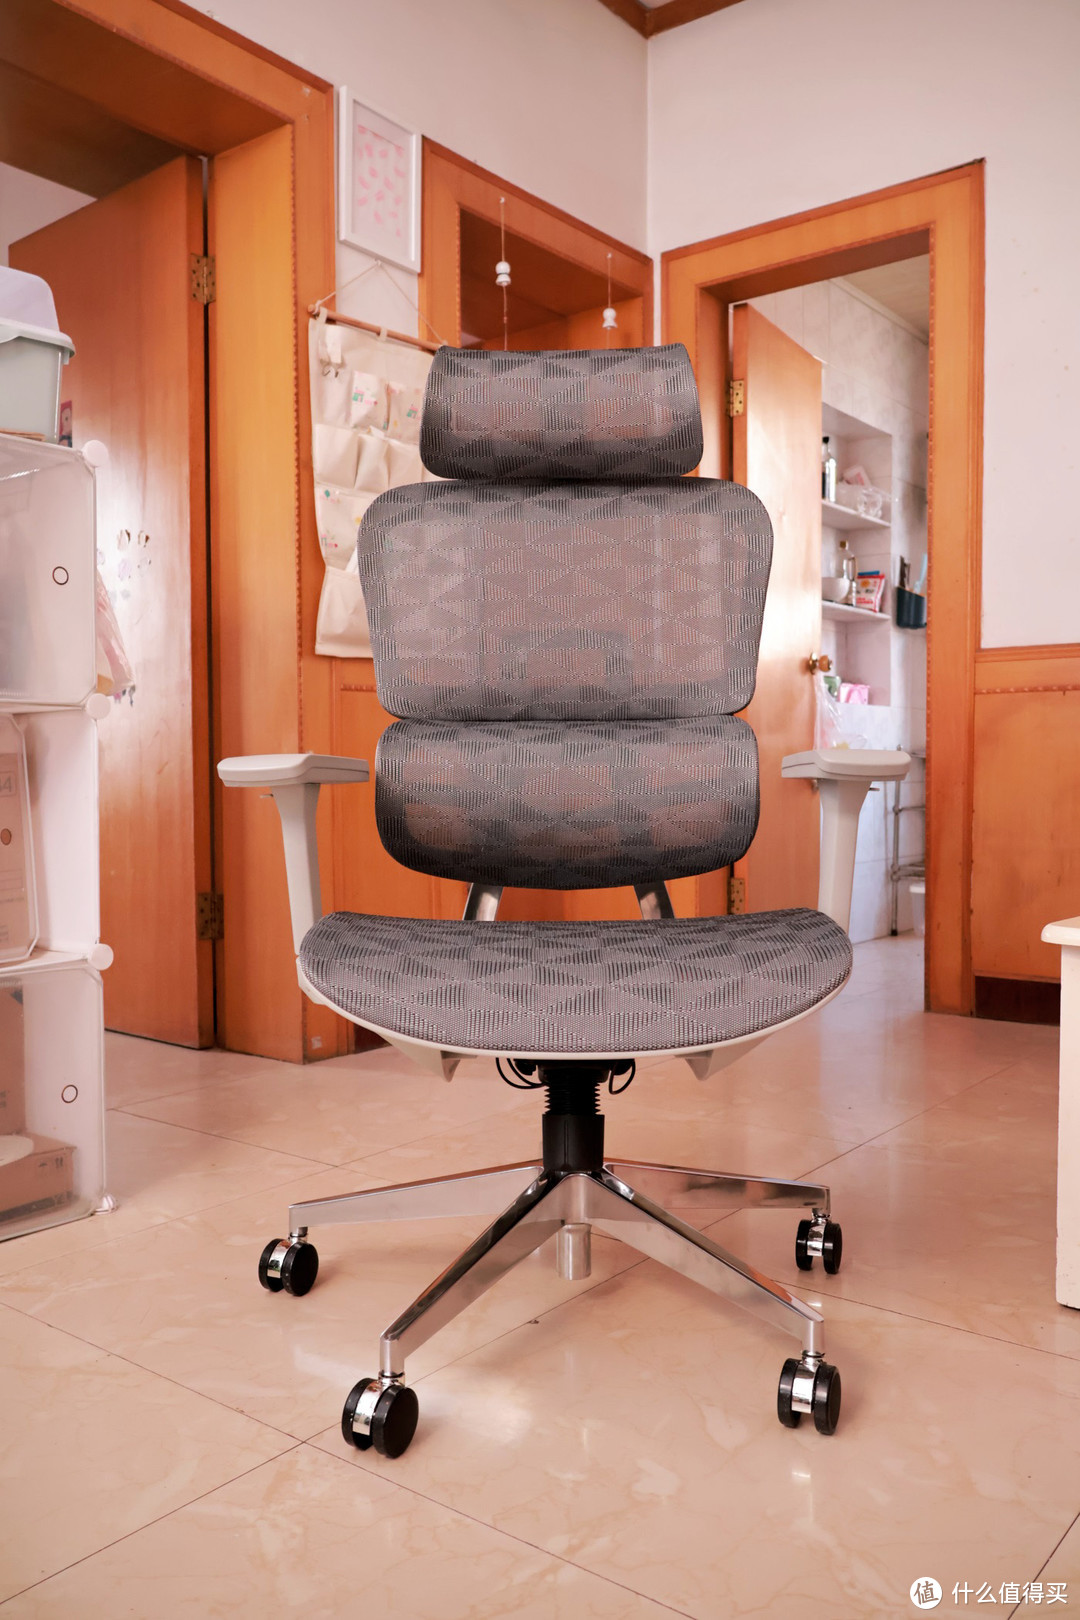 实惠舒适的人体工学电脑椅 ErgoJust爱高佳R9体验评测